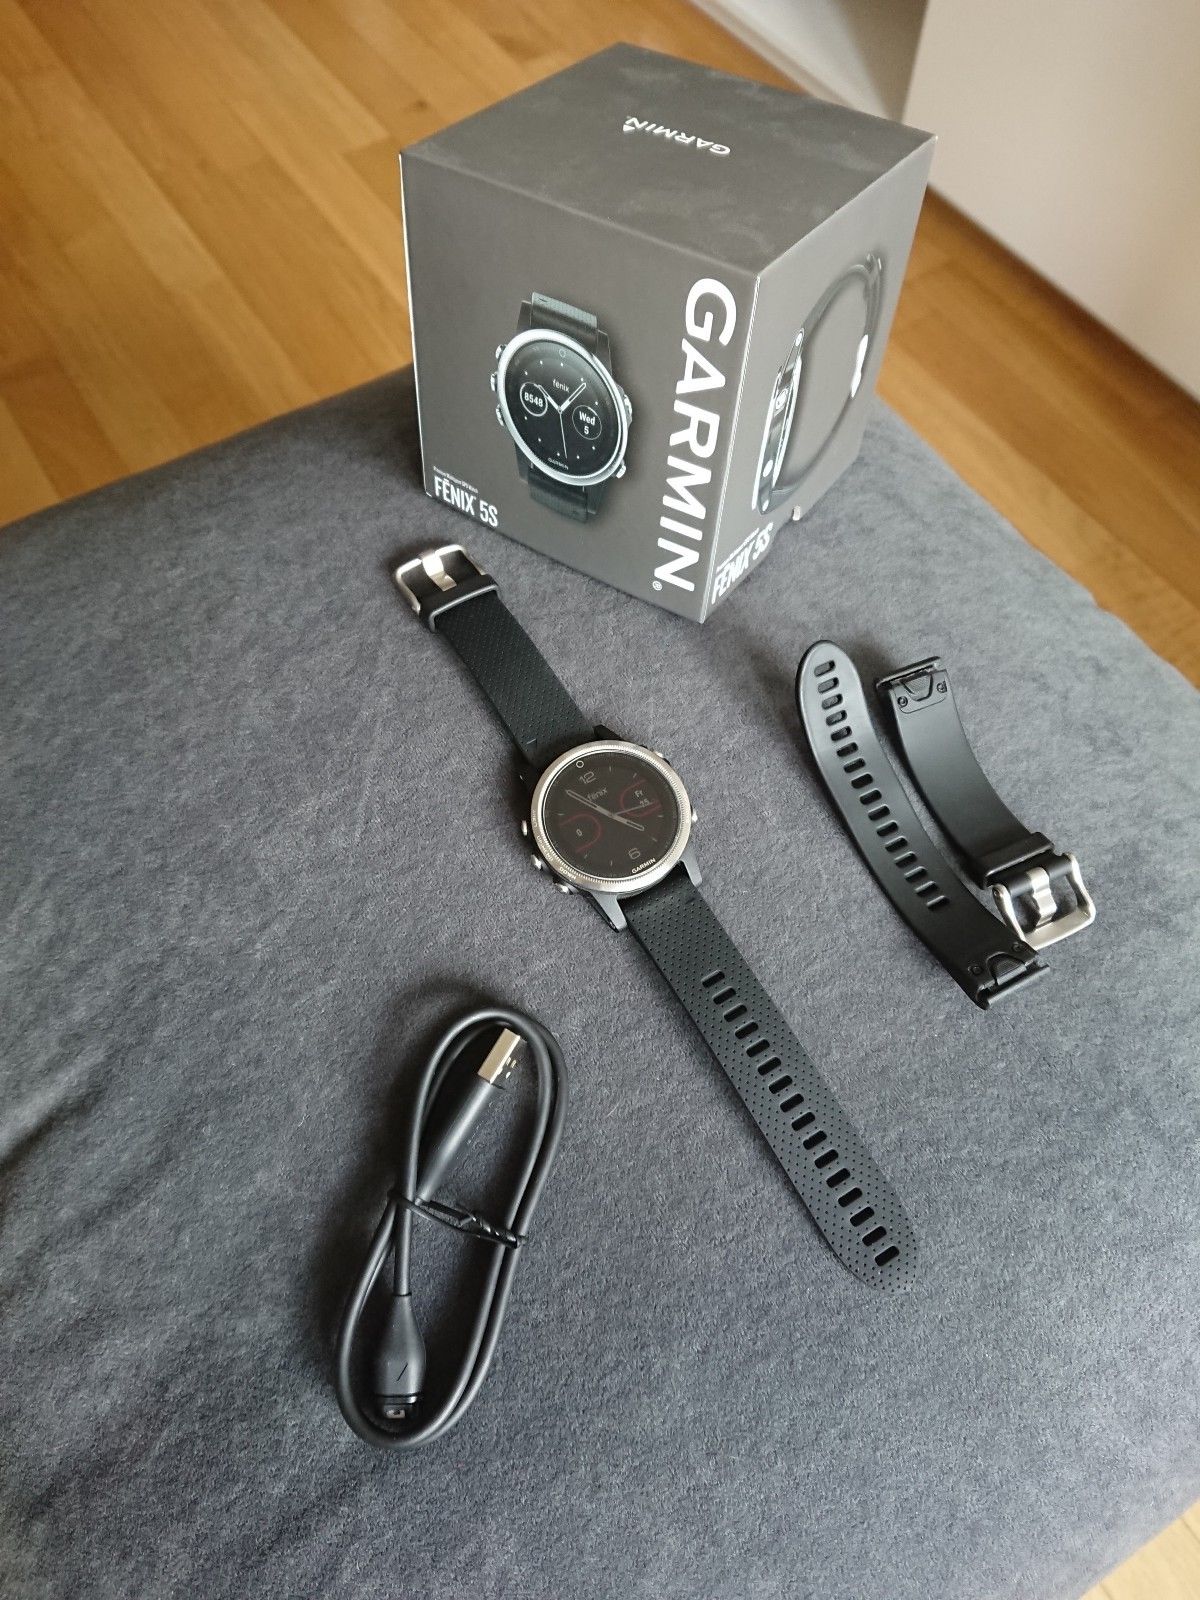 Garmin Fenix 5s - Pulsmessung am Handgelenk - GPS-Laufuhr, Sport/Smart-Watch